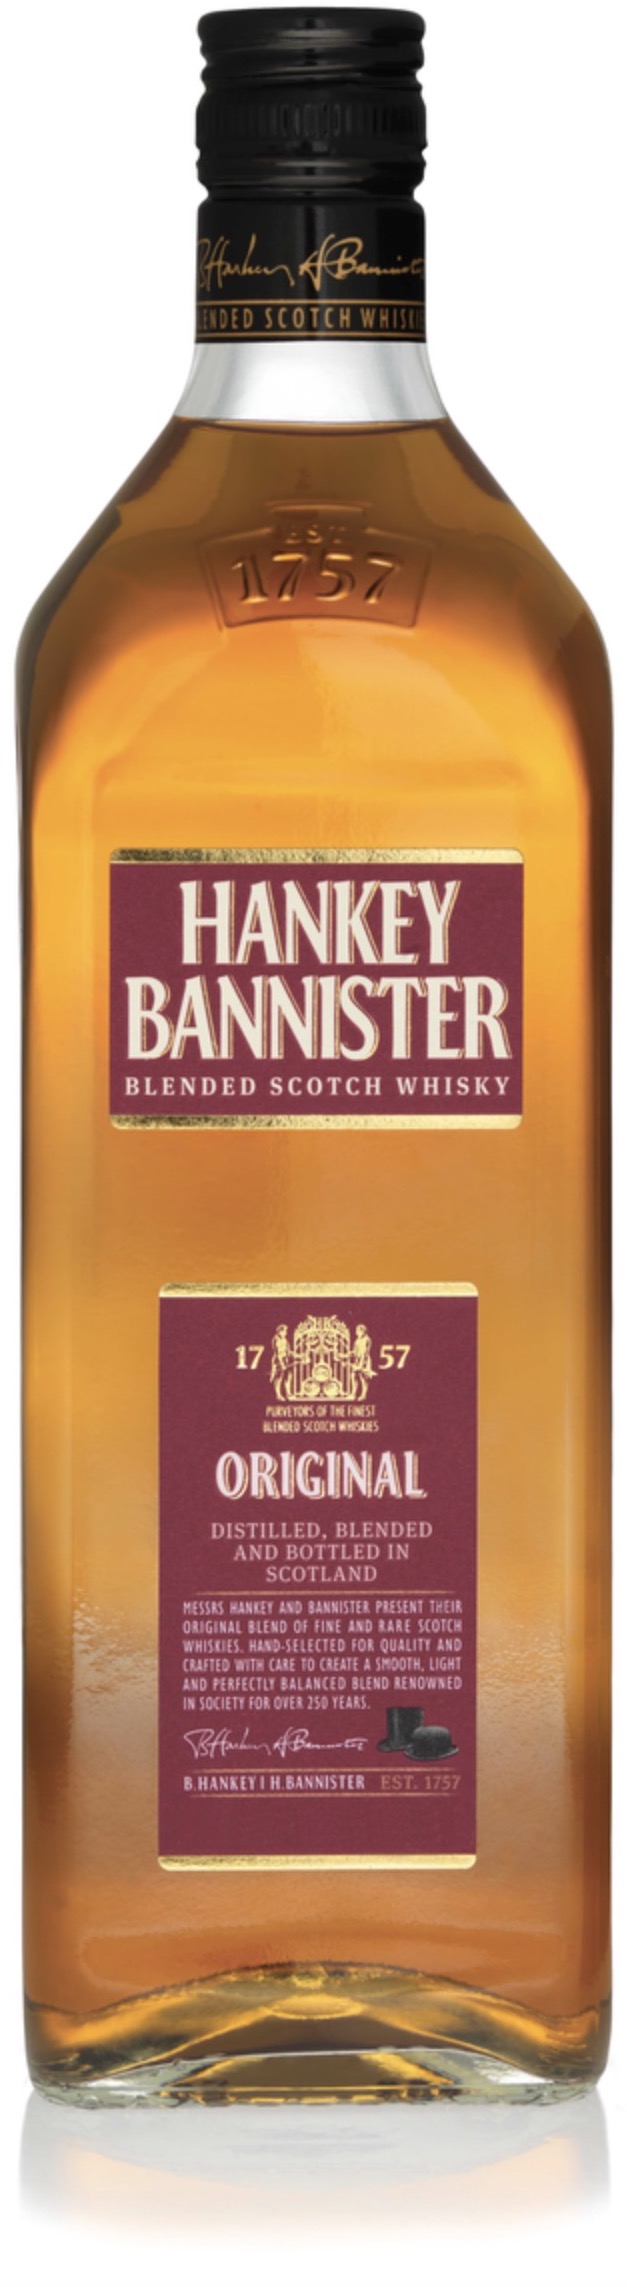 Hankey Bannister Blended Scotch Whisky 40% 0,7L